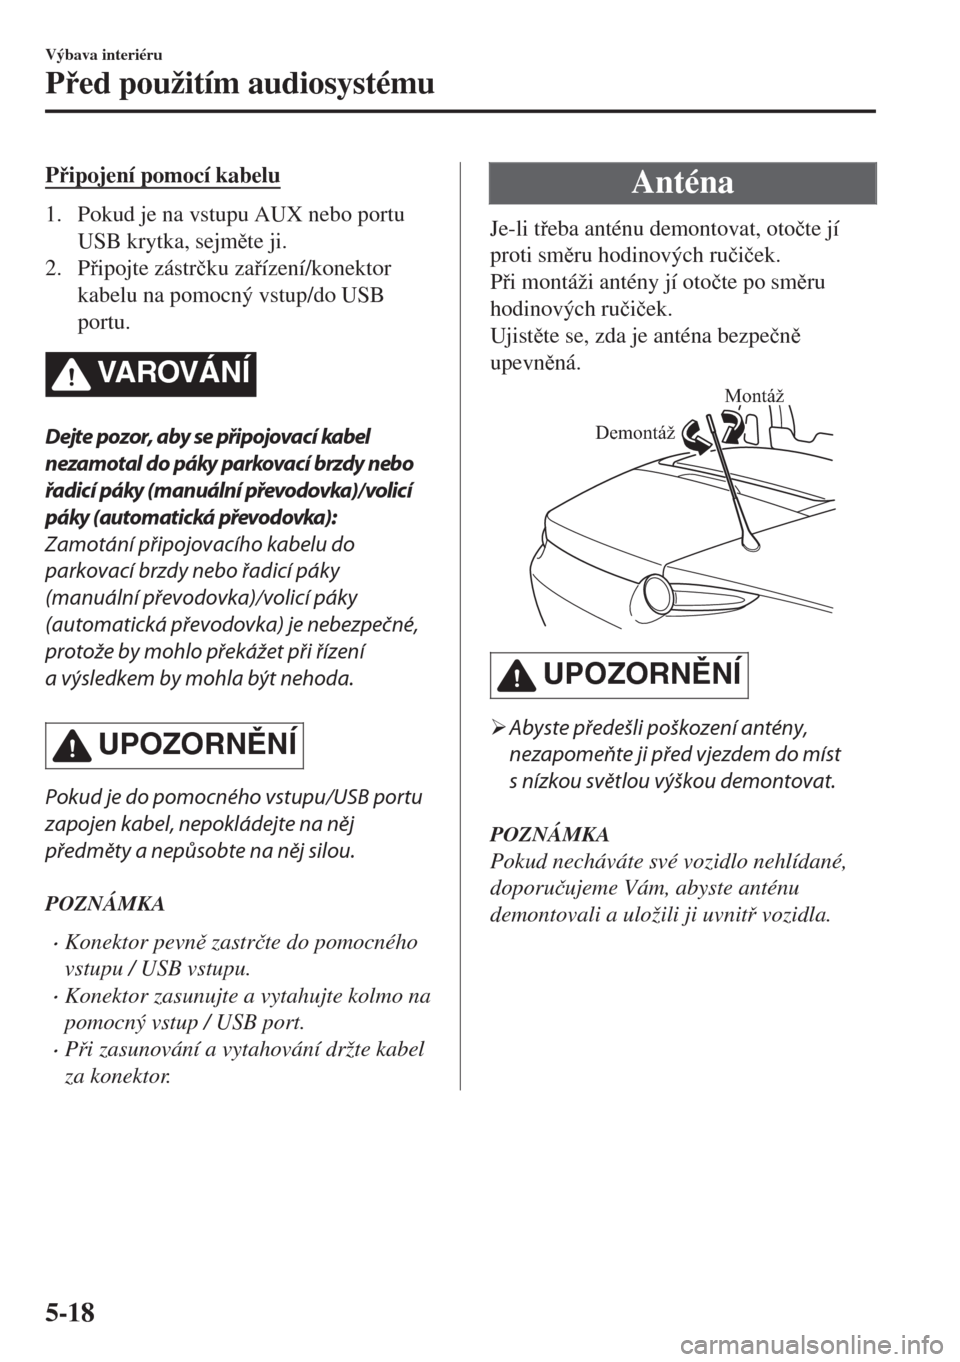 MAZDA MODEL MX-5 2018  Návod k obsluze (in Czech) Pipojení pomocí kabelu
1. Pokud je na vstupu AUX nebo portu
USB krytka, sejmte ji.
2. Pipojte zástr�þku zaízení/konektor
kabelu na pomocný vstup/do USB
portu.
VA R OV Á N Í
Dejte pozo